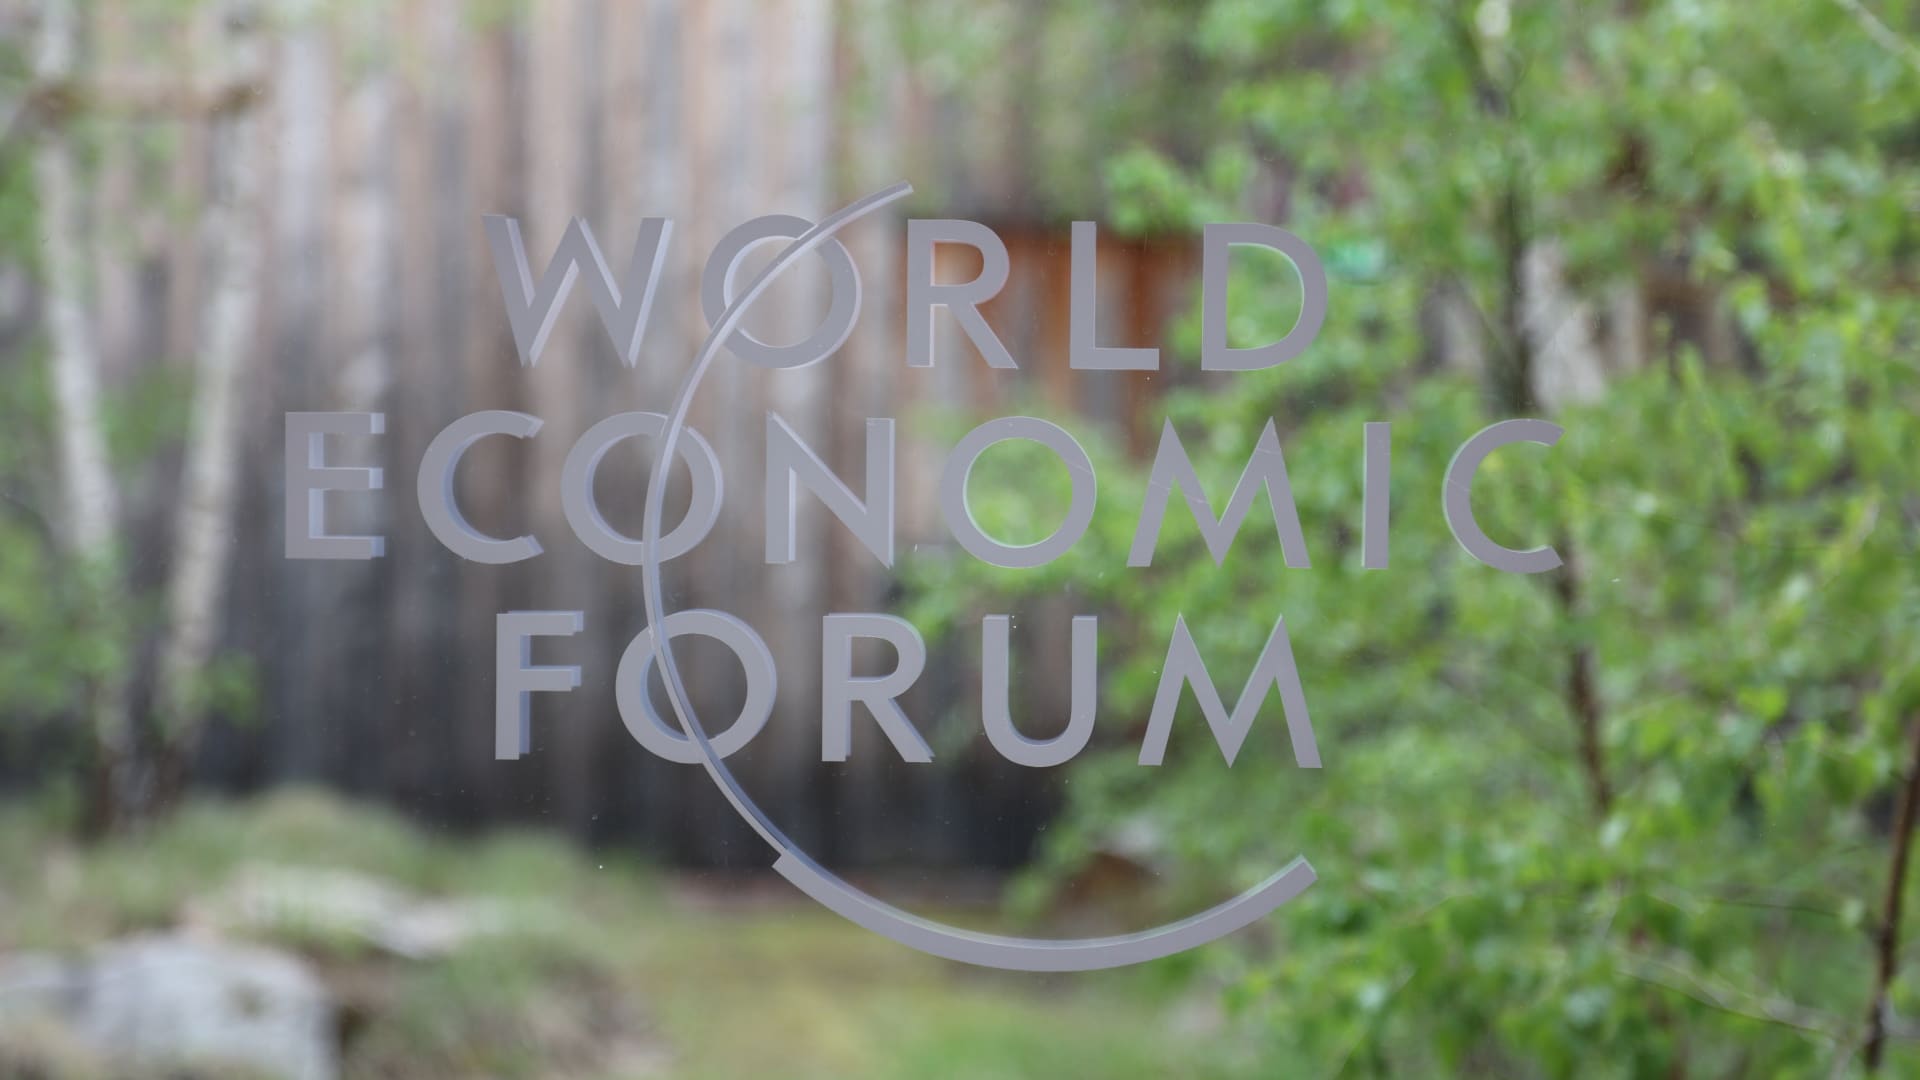 Arranca el Foro Económico Mundial en Davos